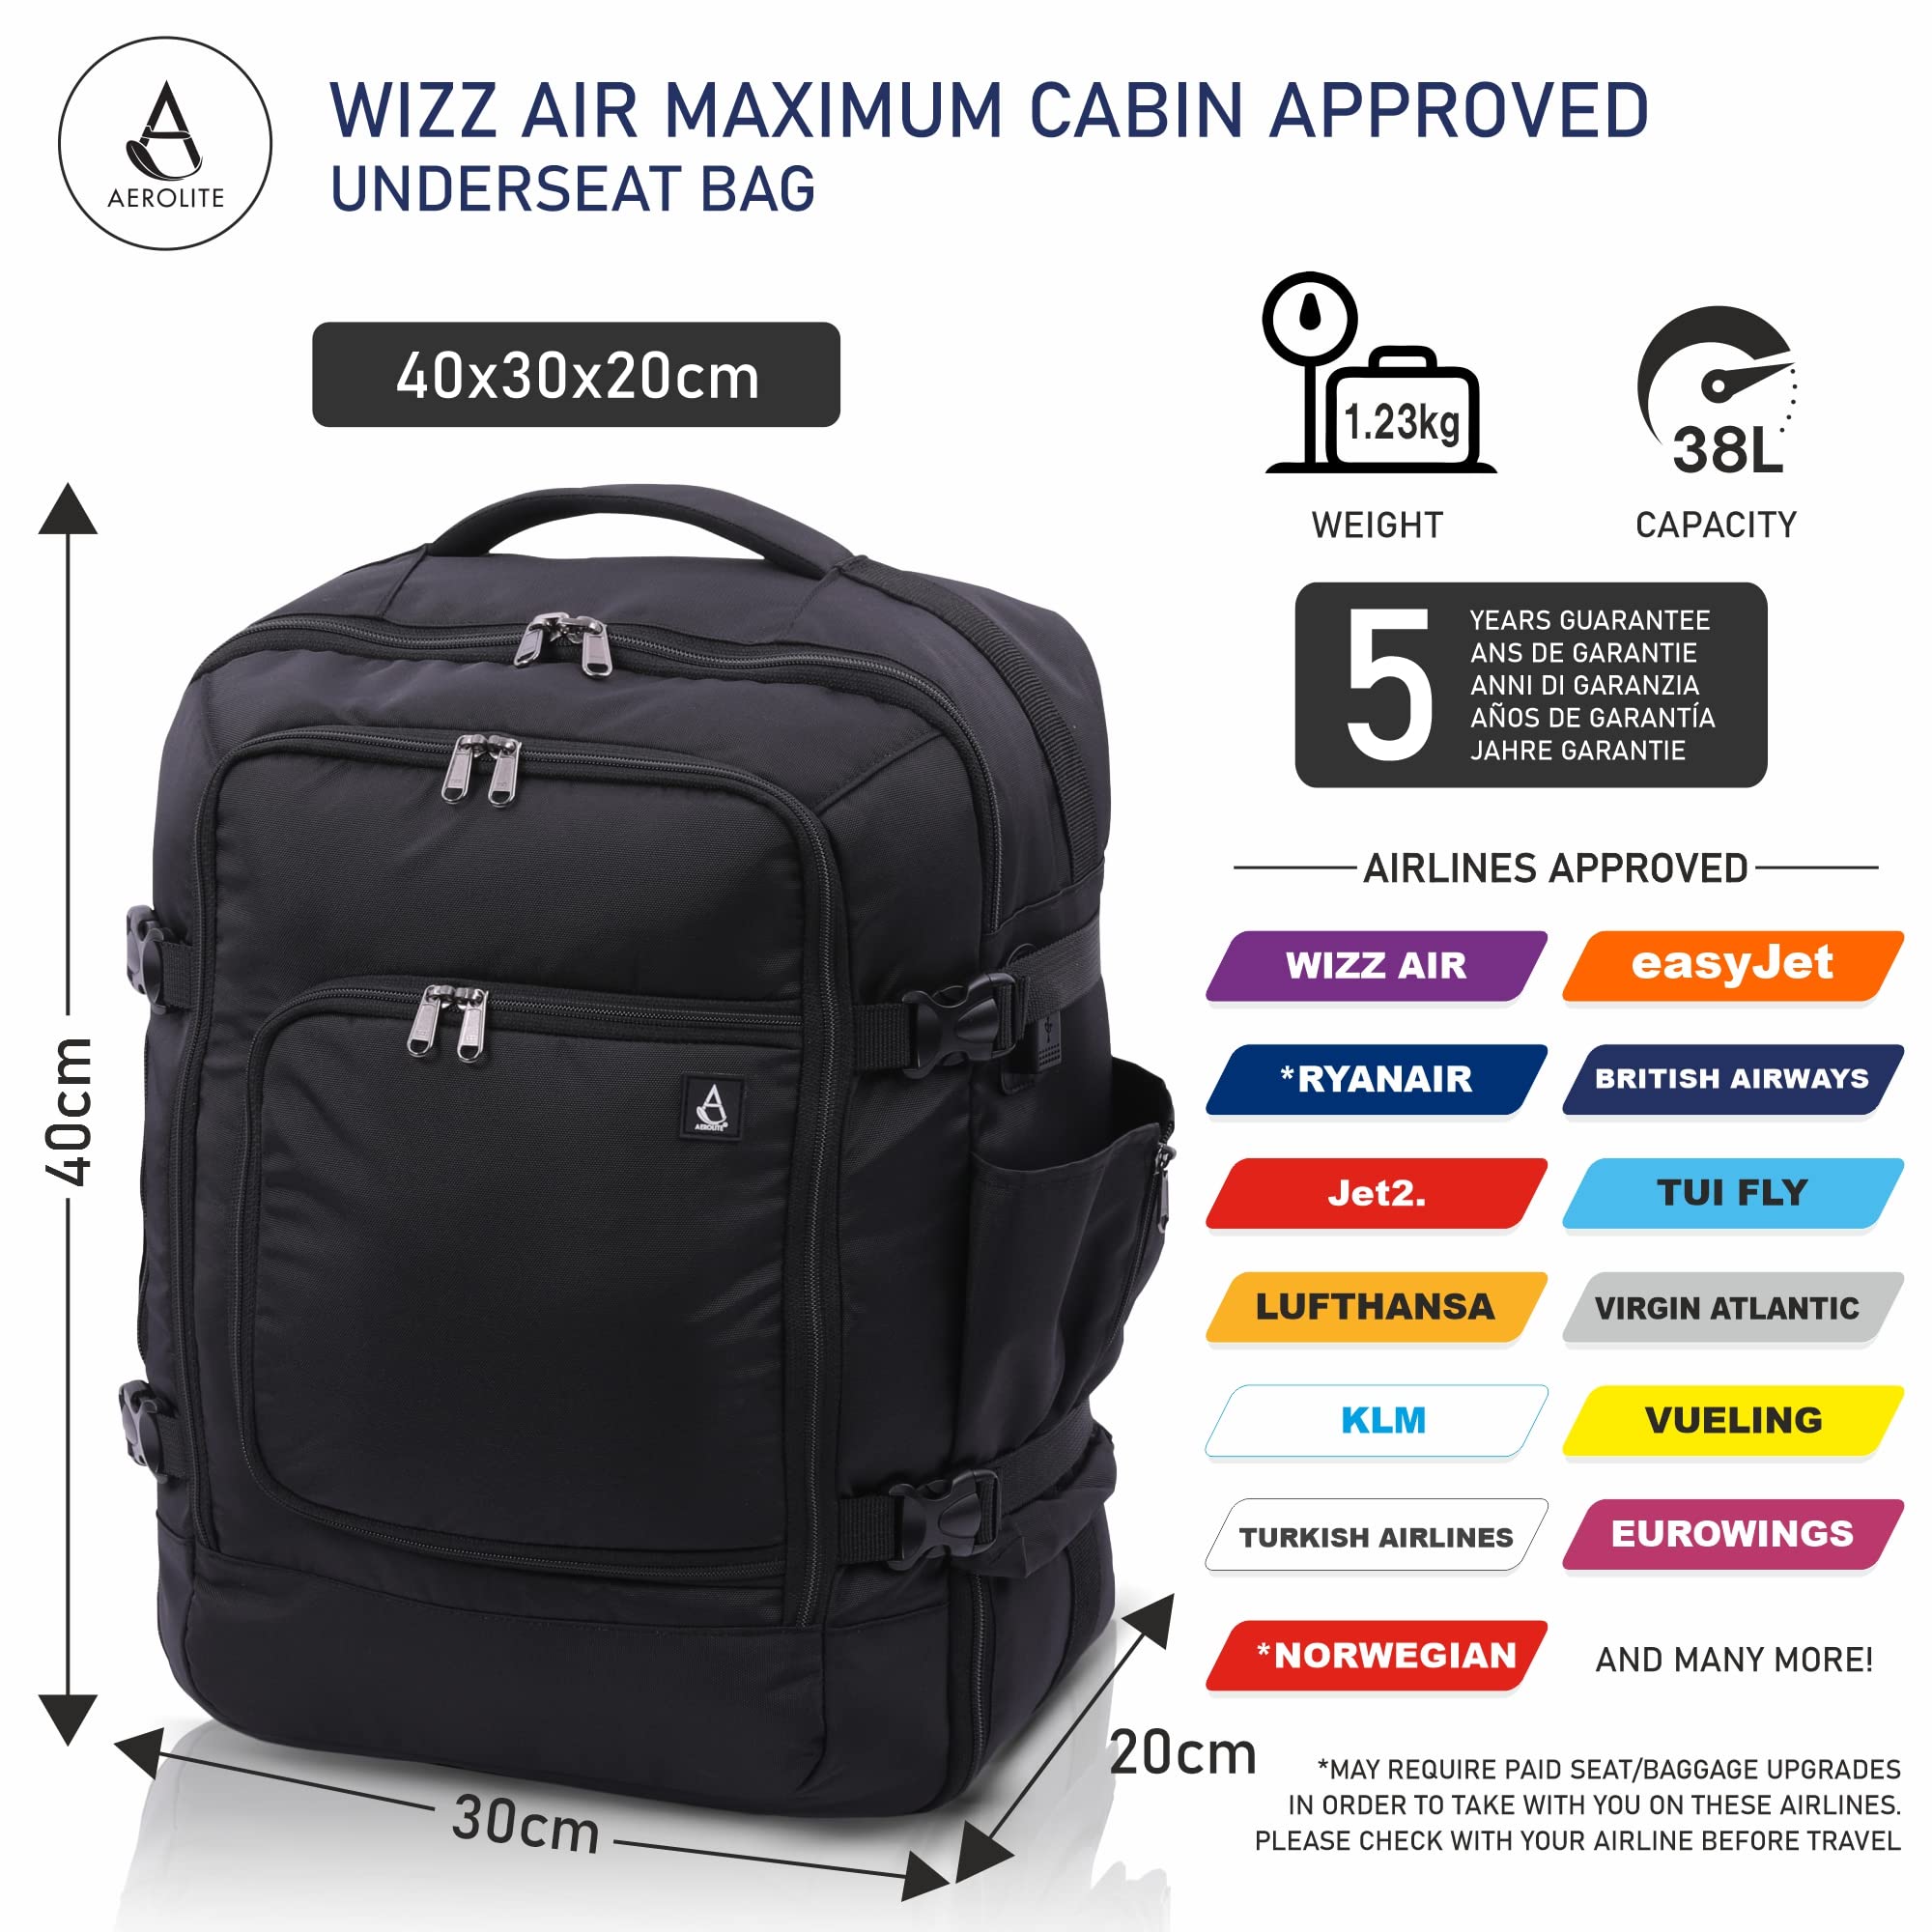 Mochila / trolley 40x30x20 (cm) equipaje Wizz Air, RYANAIR